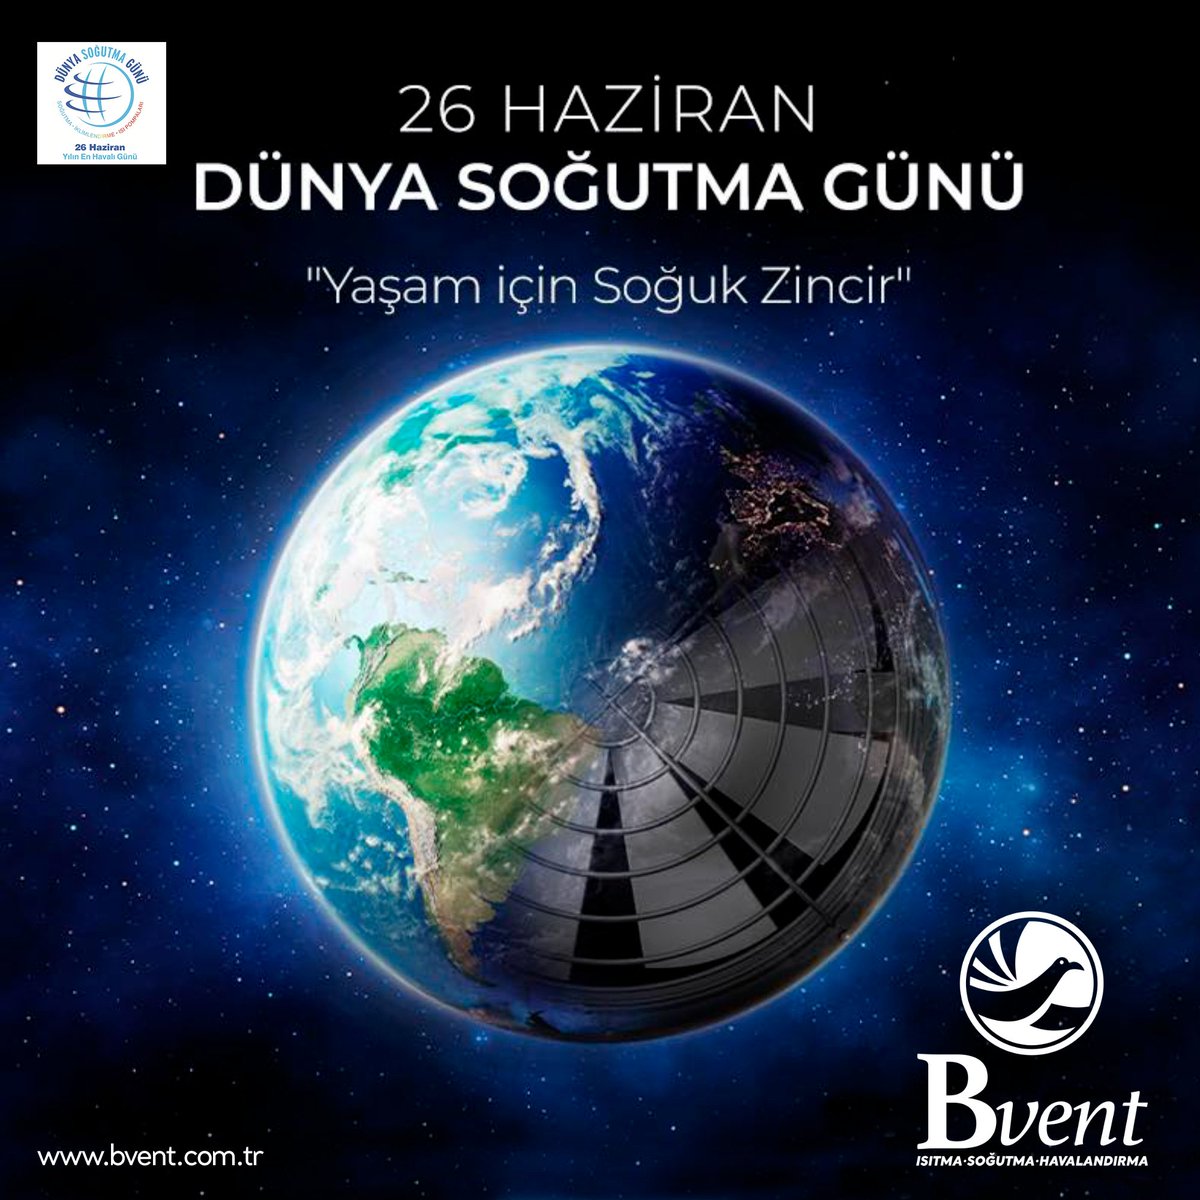 26 Haziran #DünyaSoğutmaGünü!

Tüm sektör dostlarımızın Dünya Soğutma Günü'nü kutlarız. #WorldRefrigerationDay #bvent #bventmühendislik #izmir